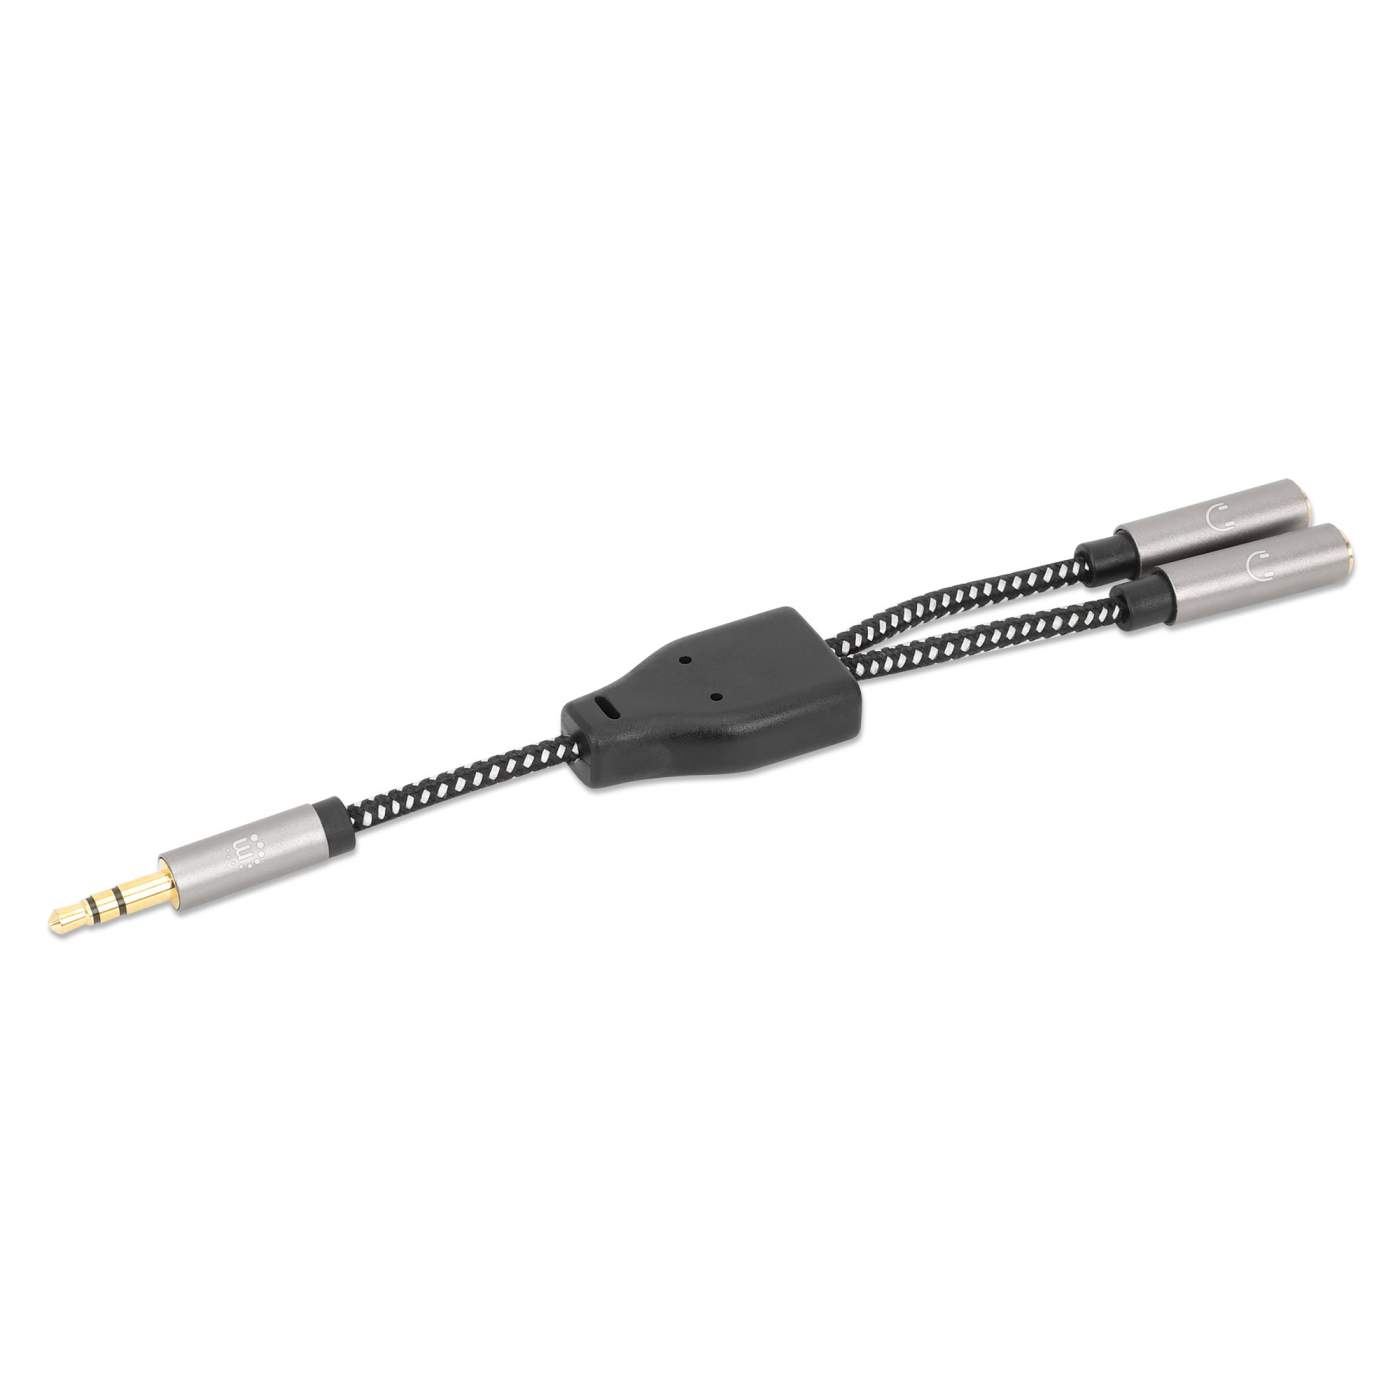 Adaptador de Auriculares en “Y” de un Plug a 2 salidas 3.5 mm